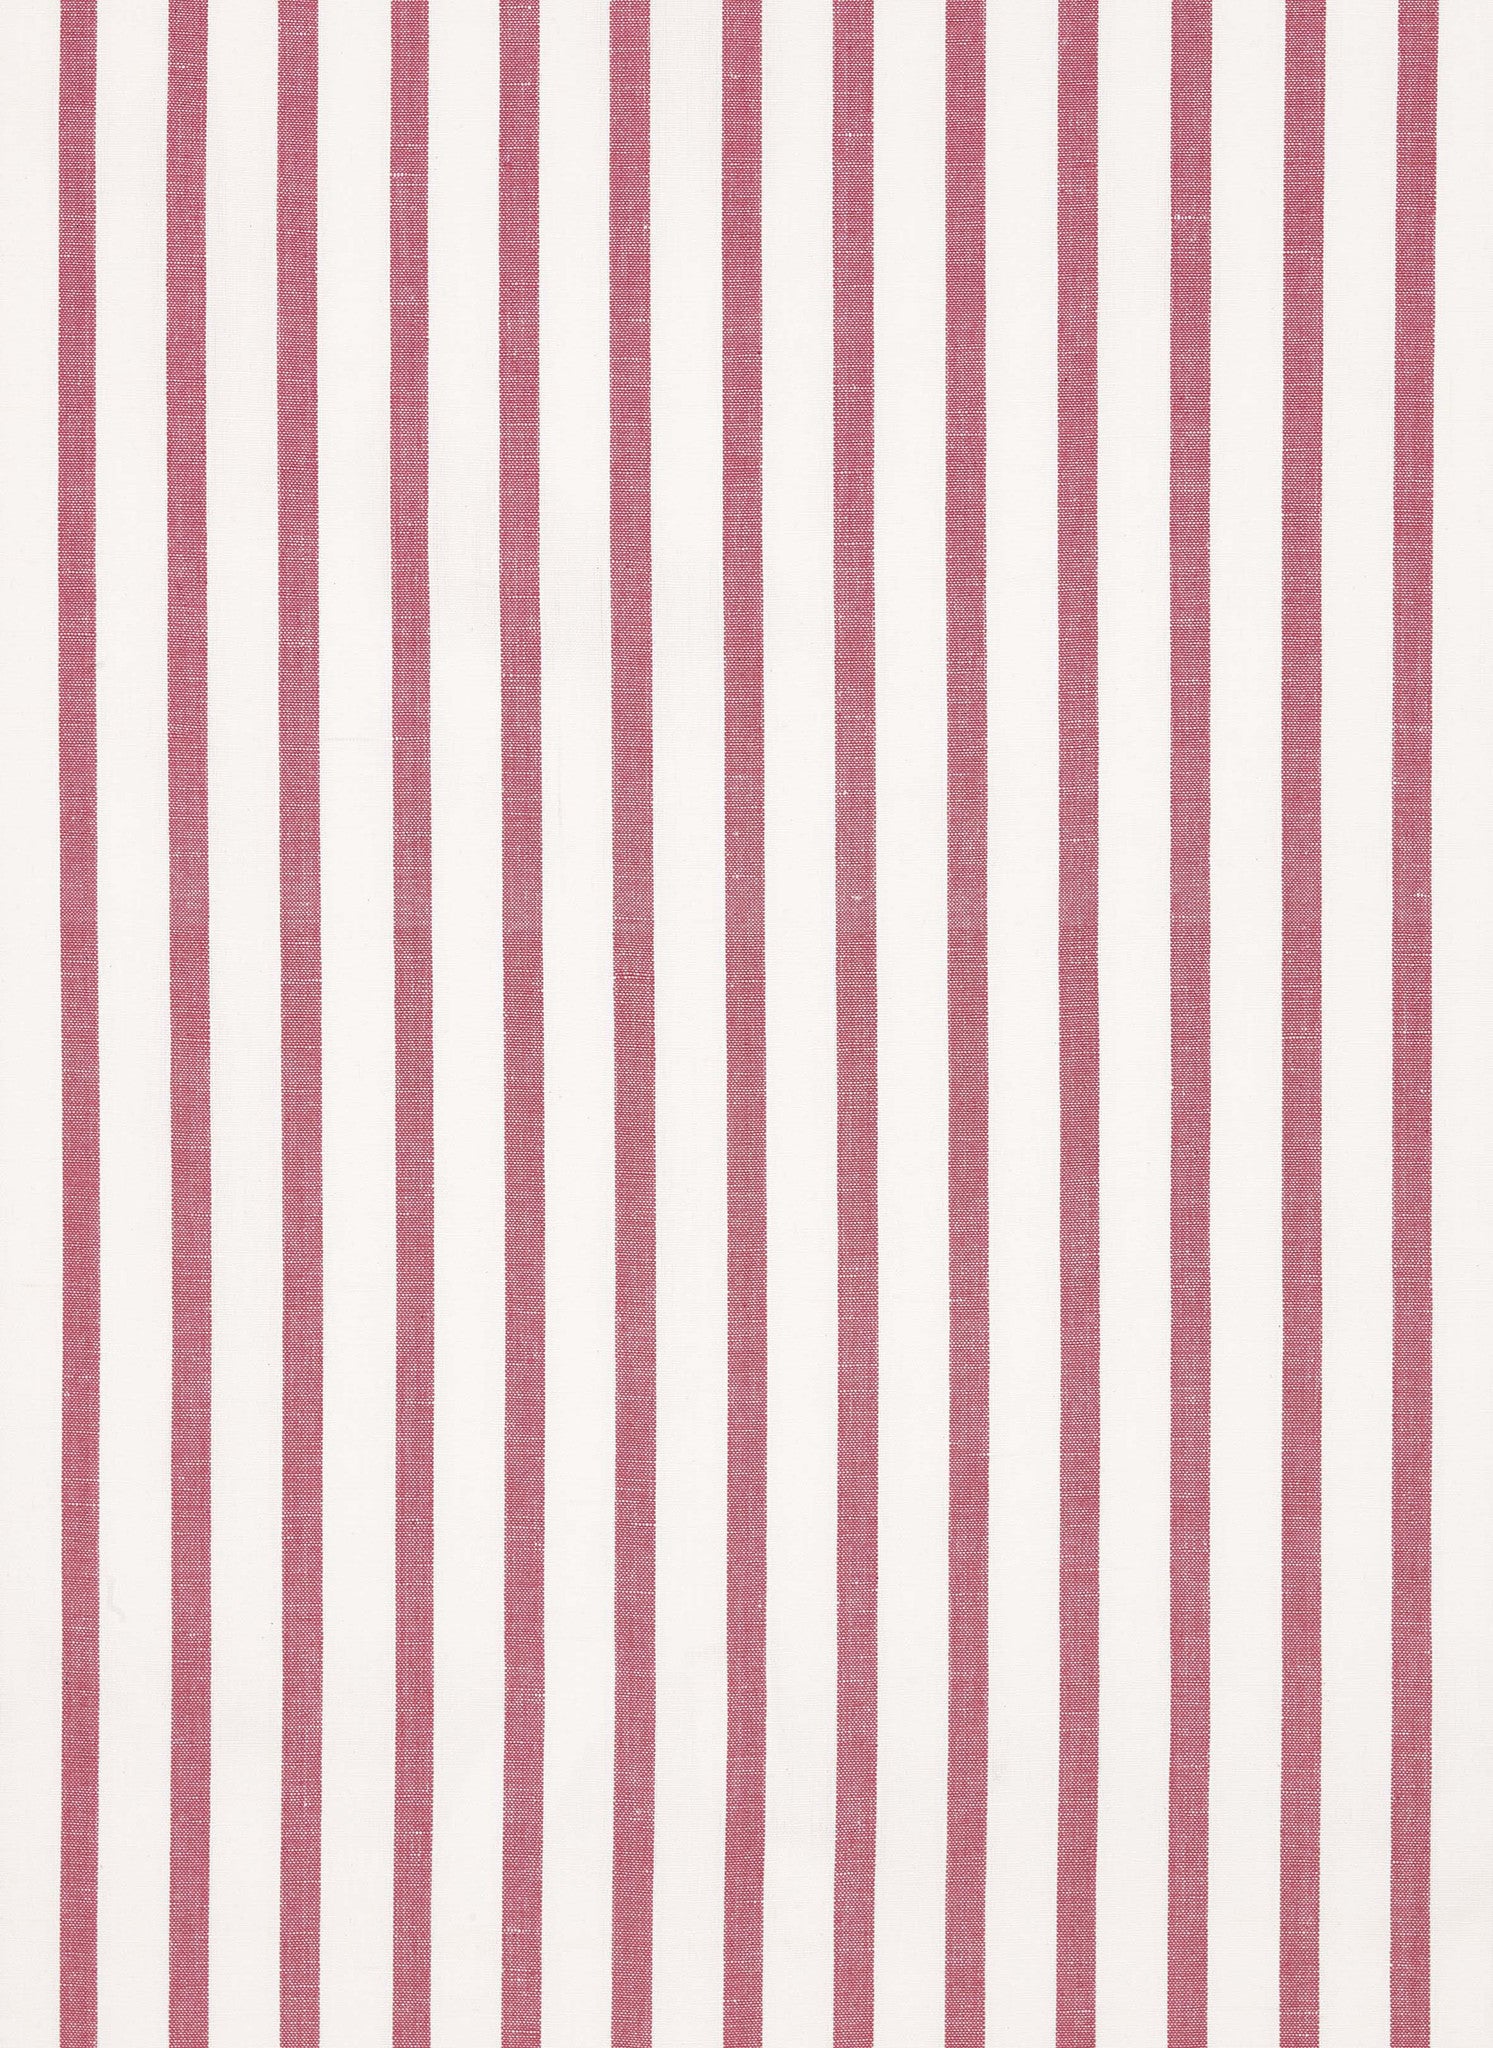 Autumn Ticking Stripe Cotton Linen Fabric by the Meter in Dark Heather Pink